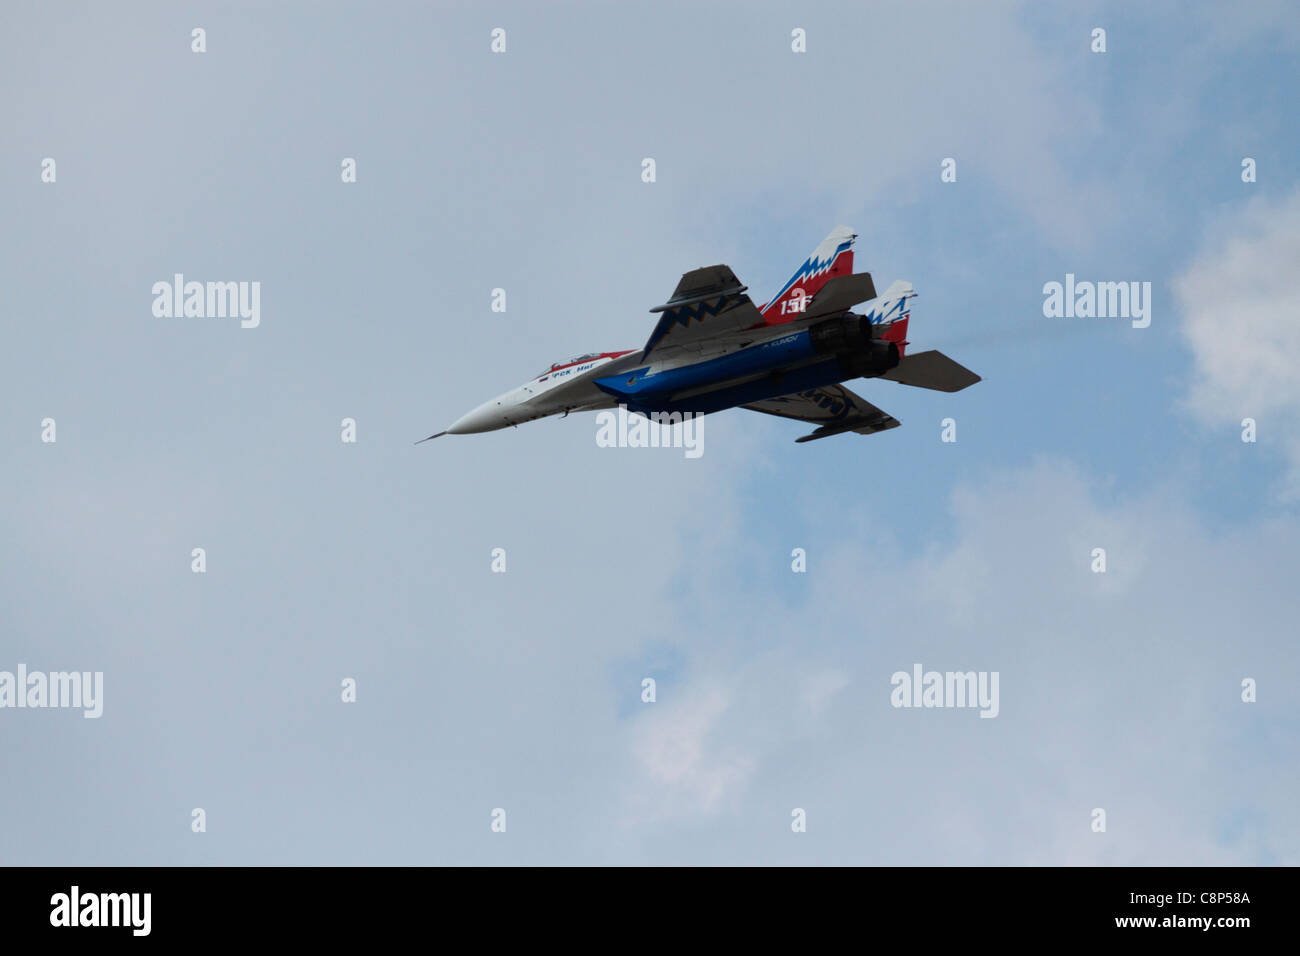 Russischen MiG-29 Kampfflugzeug in weiß-blau-rot Luft zeigen Farben beim Vorbeiflug Stockfoto